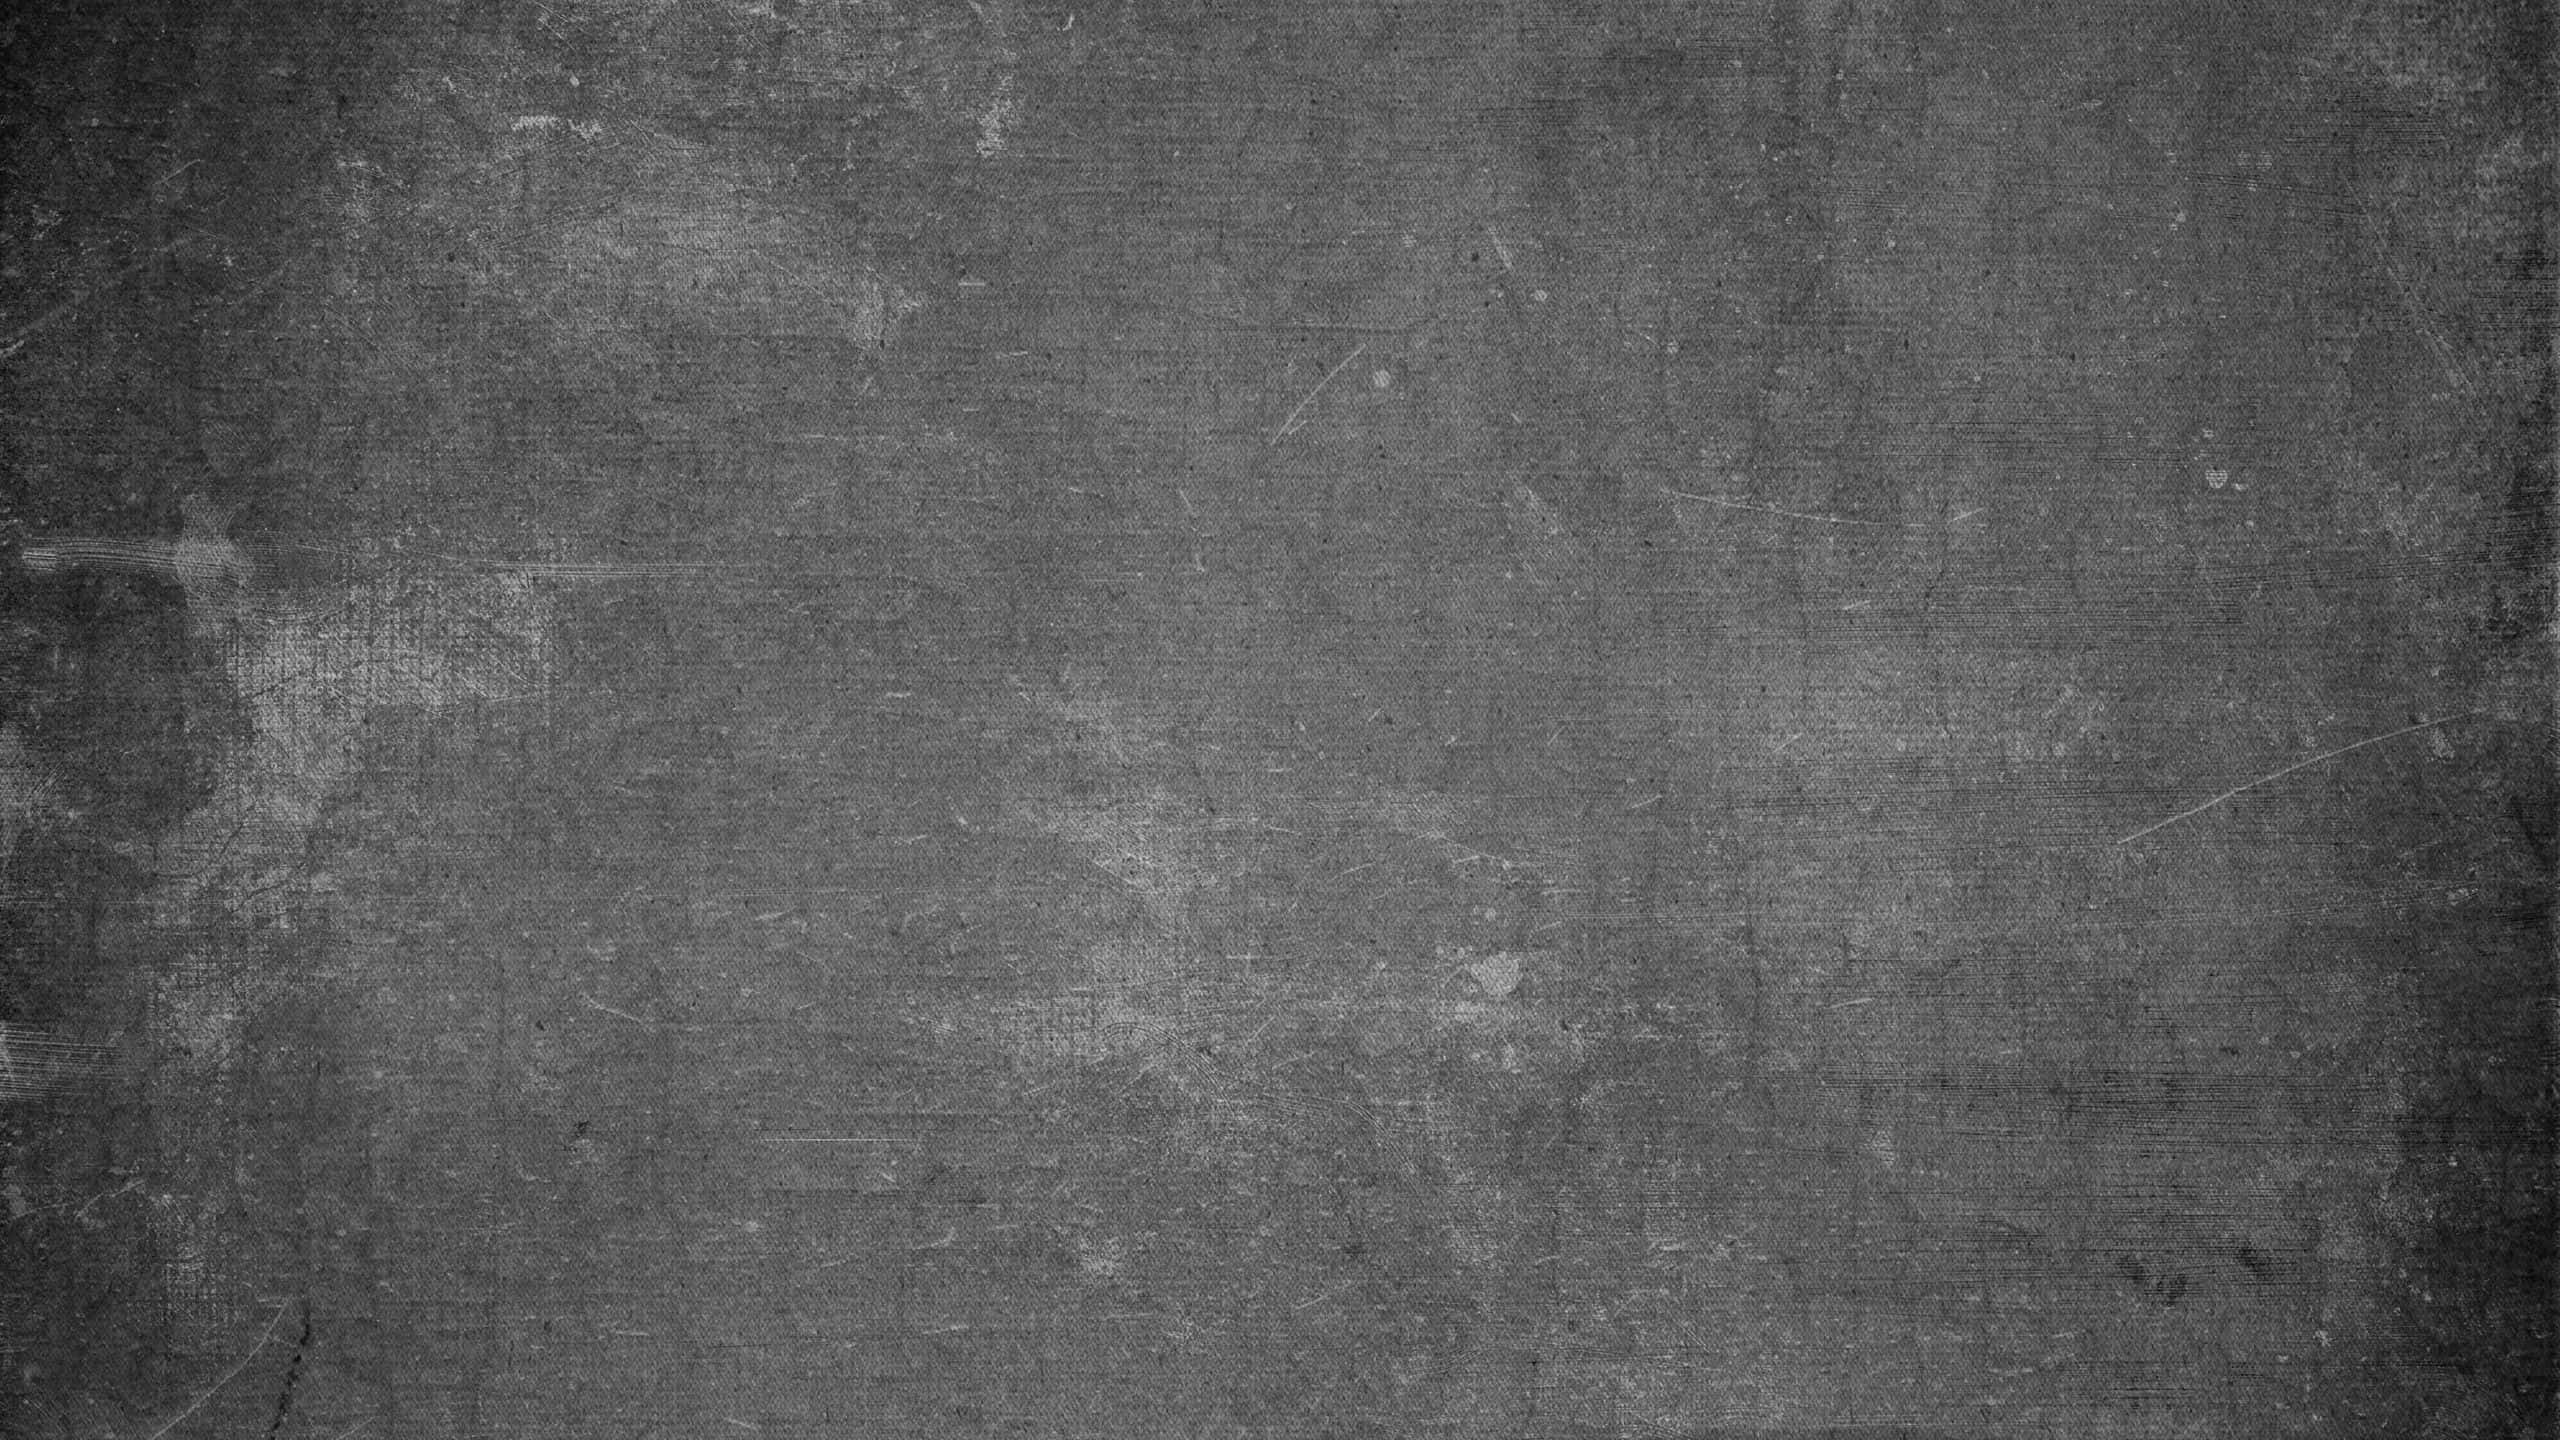 Caption: Grunge Concrete Texture Background